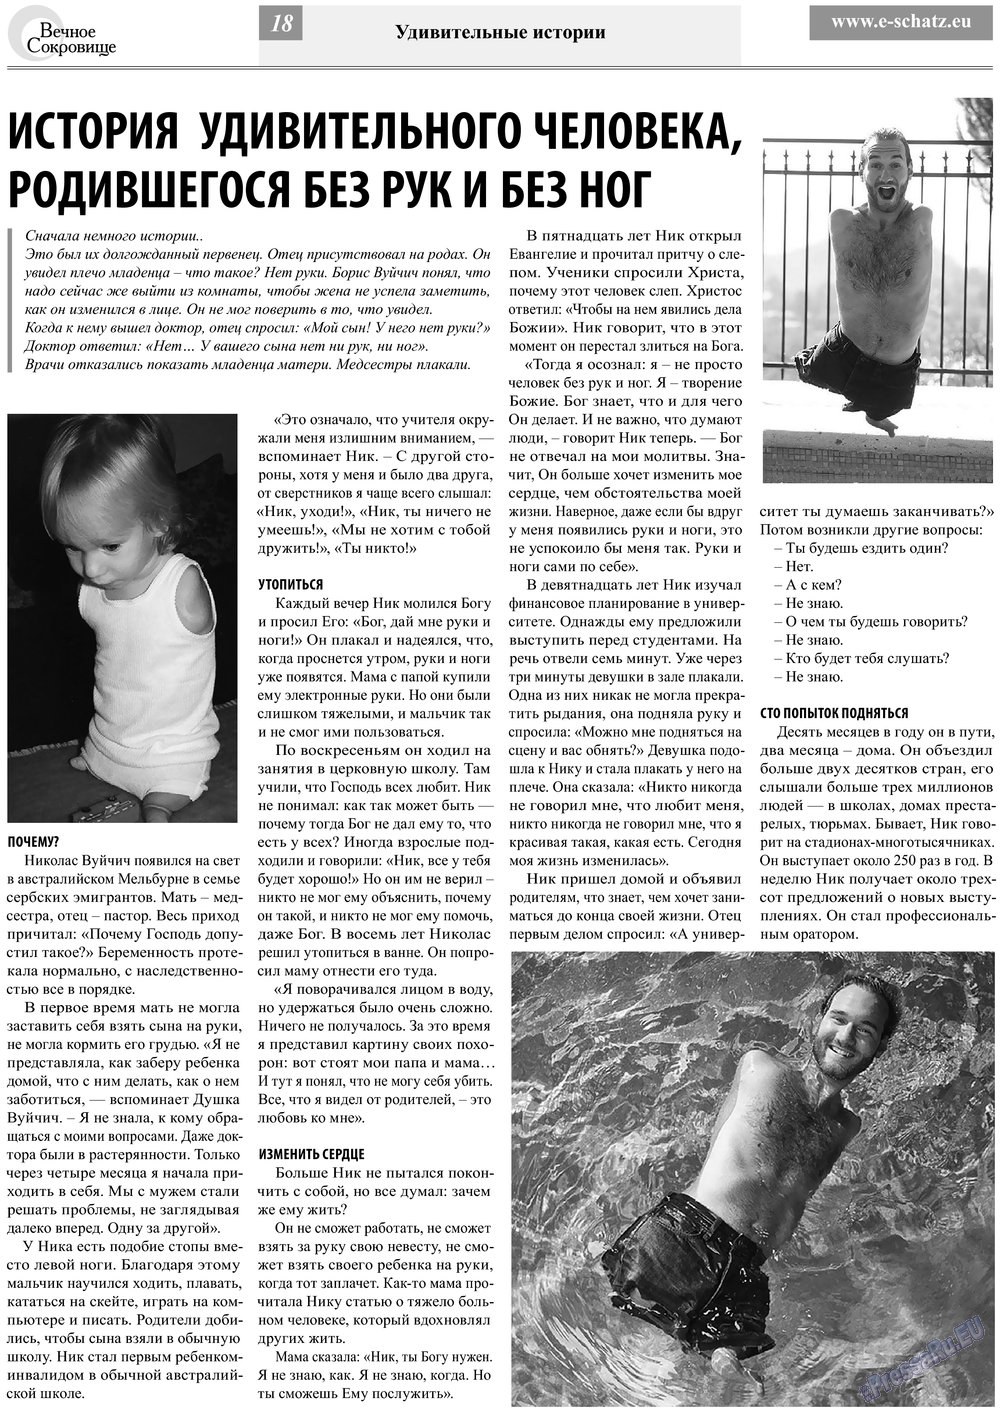 Вечное сокровище (газета). 2013 год, номер 2, стр. 18